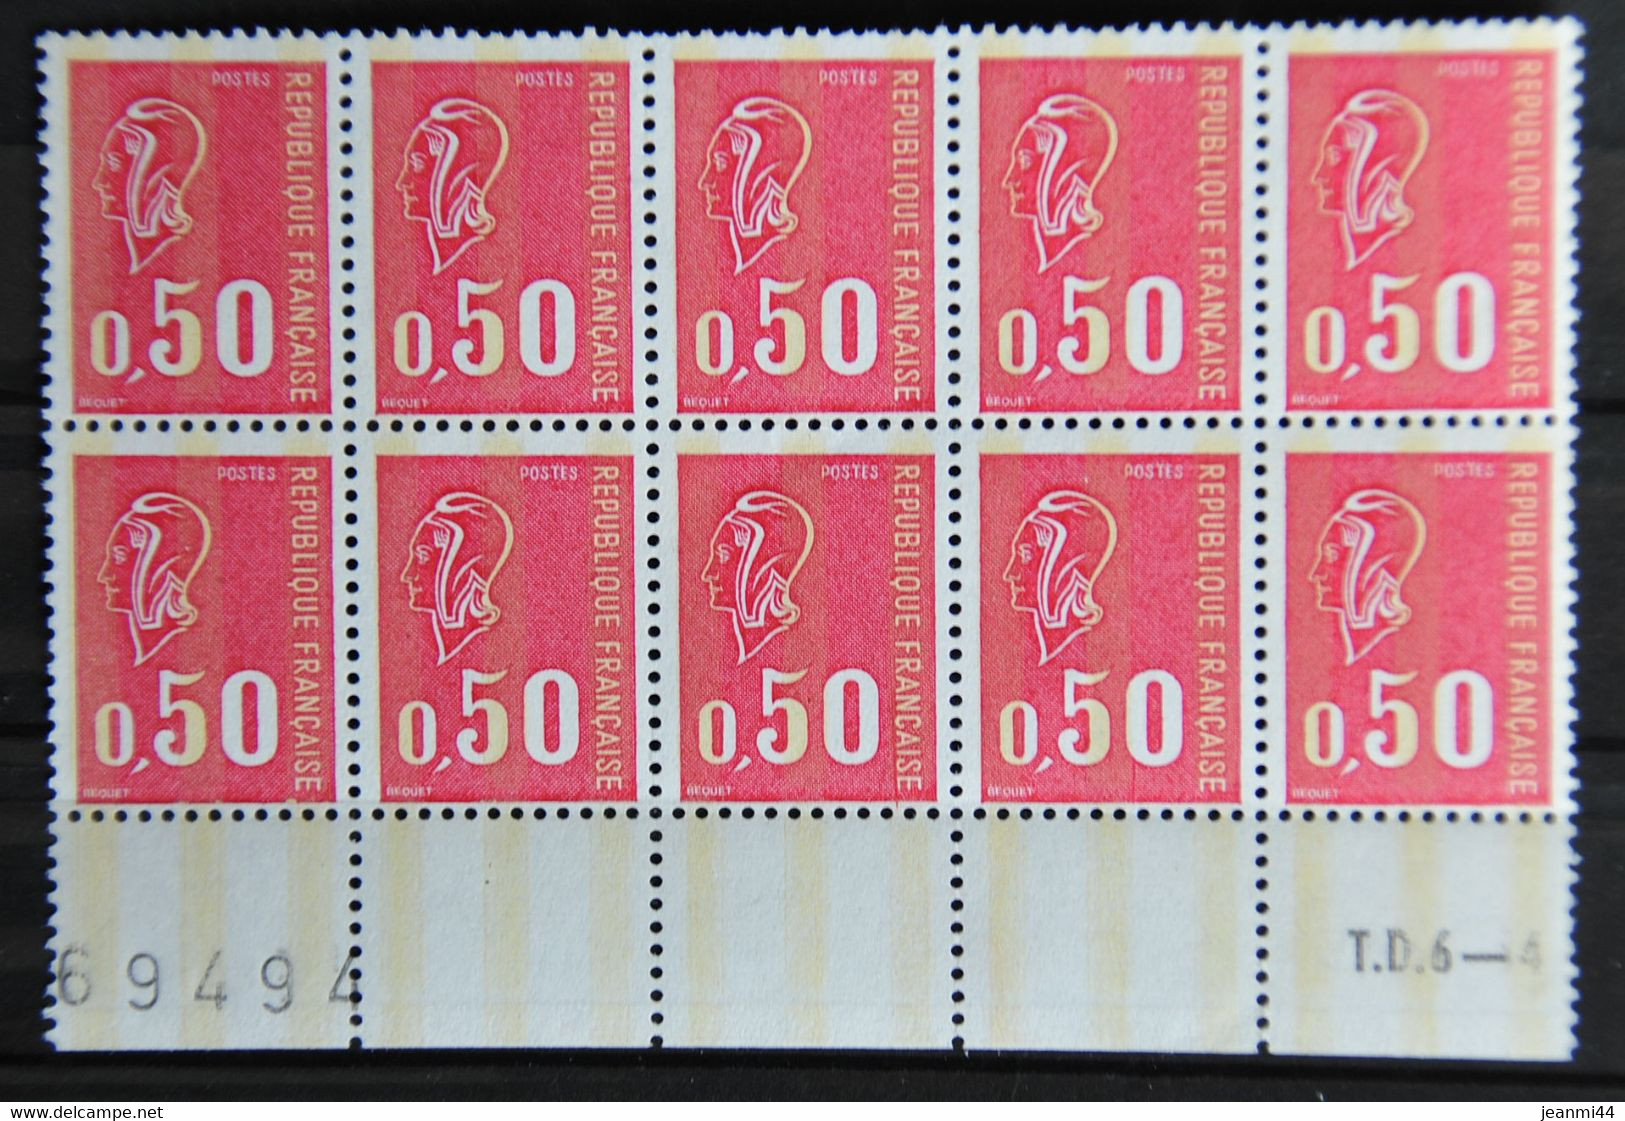 France 1971 - N°1664c** - Marianne De Béquet 50c Rouge - 3 Bandes De Phosphore - Bloc De 10, Bas De Feuille. - 1971-1976 Maríanne De Béquet